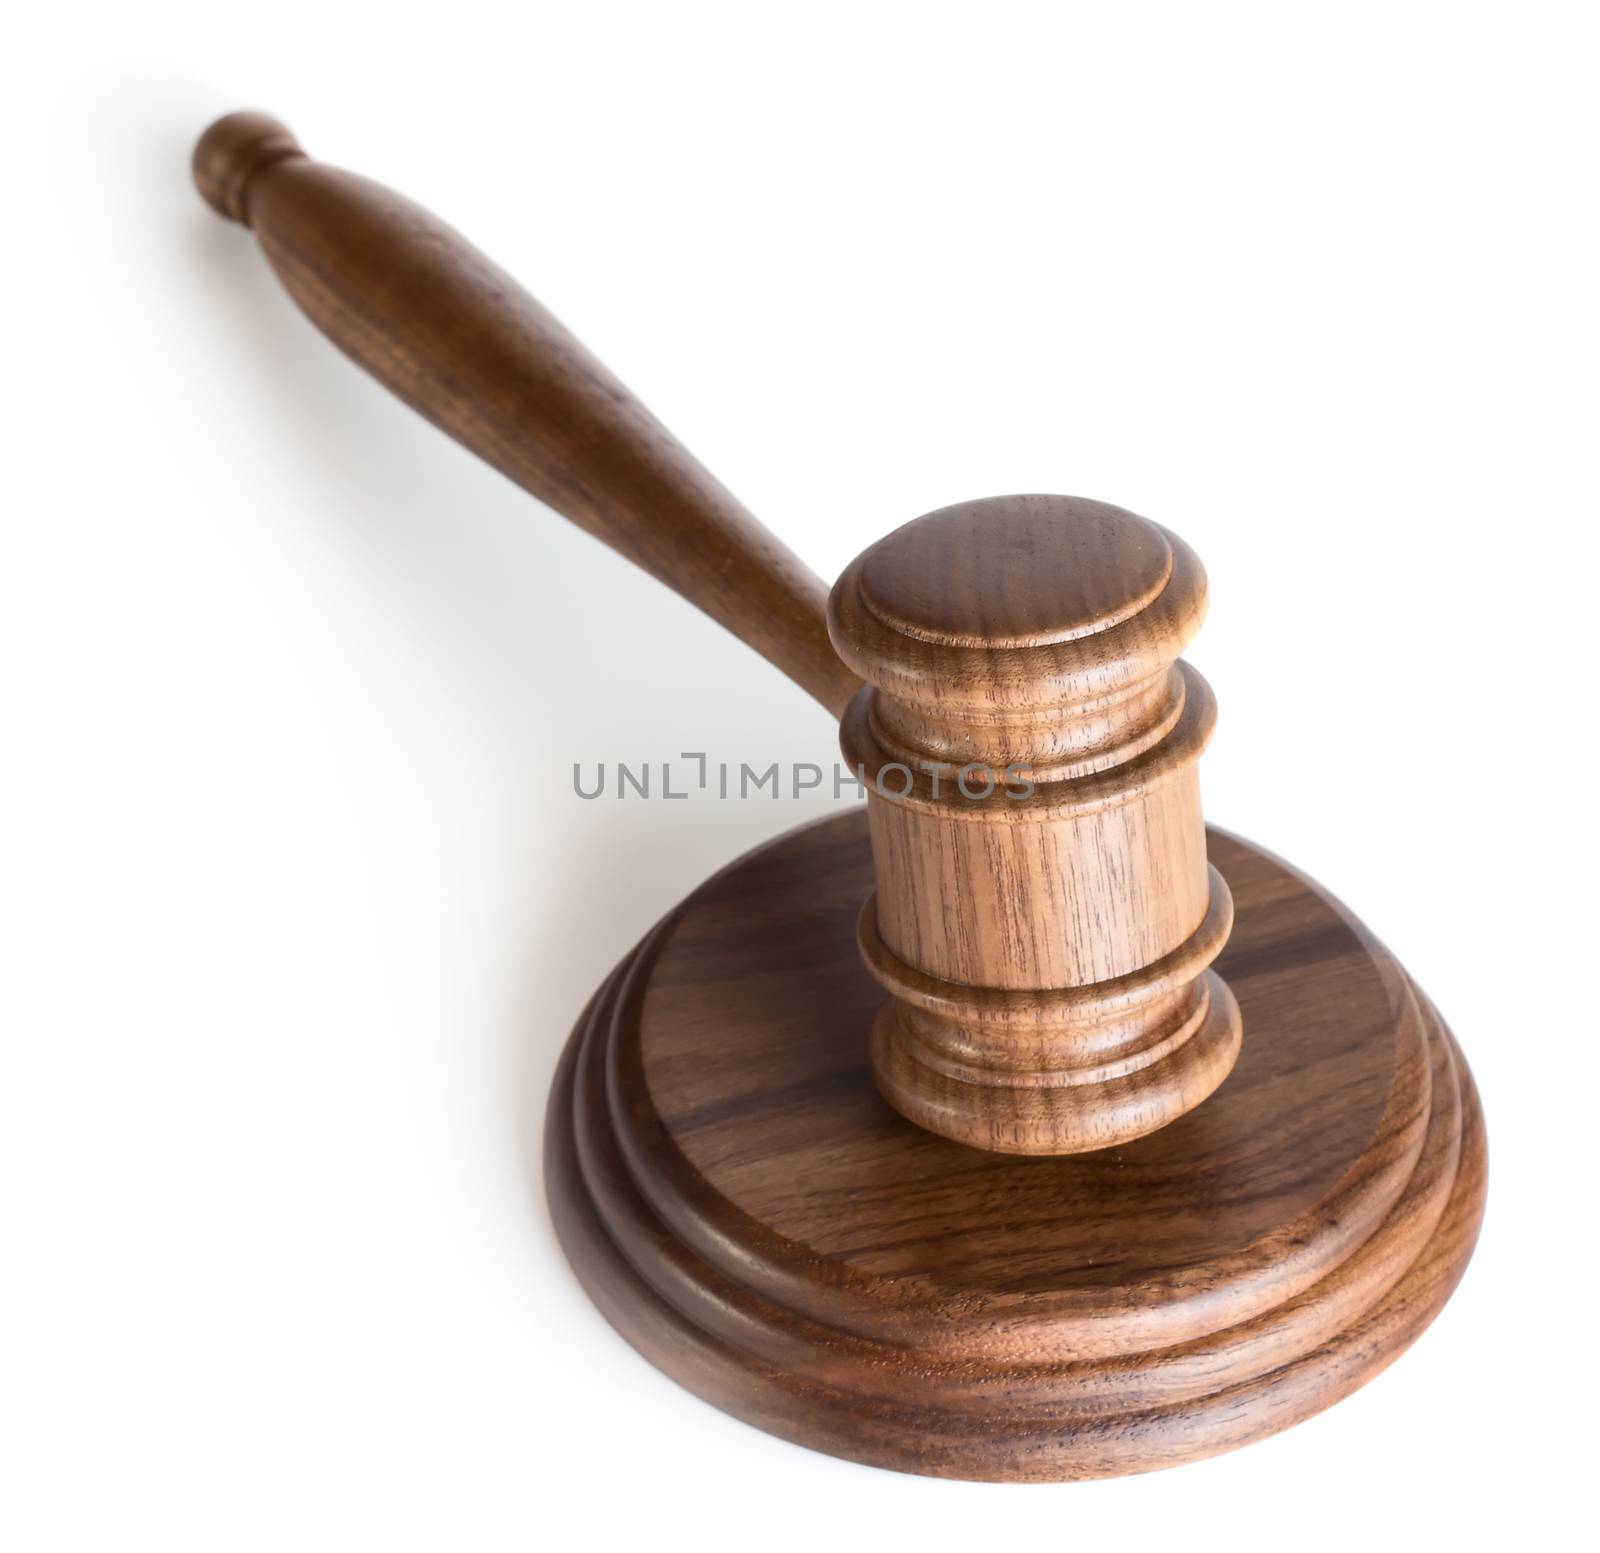 Judge gavel isolated on white background